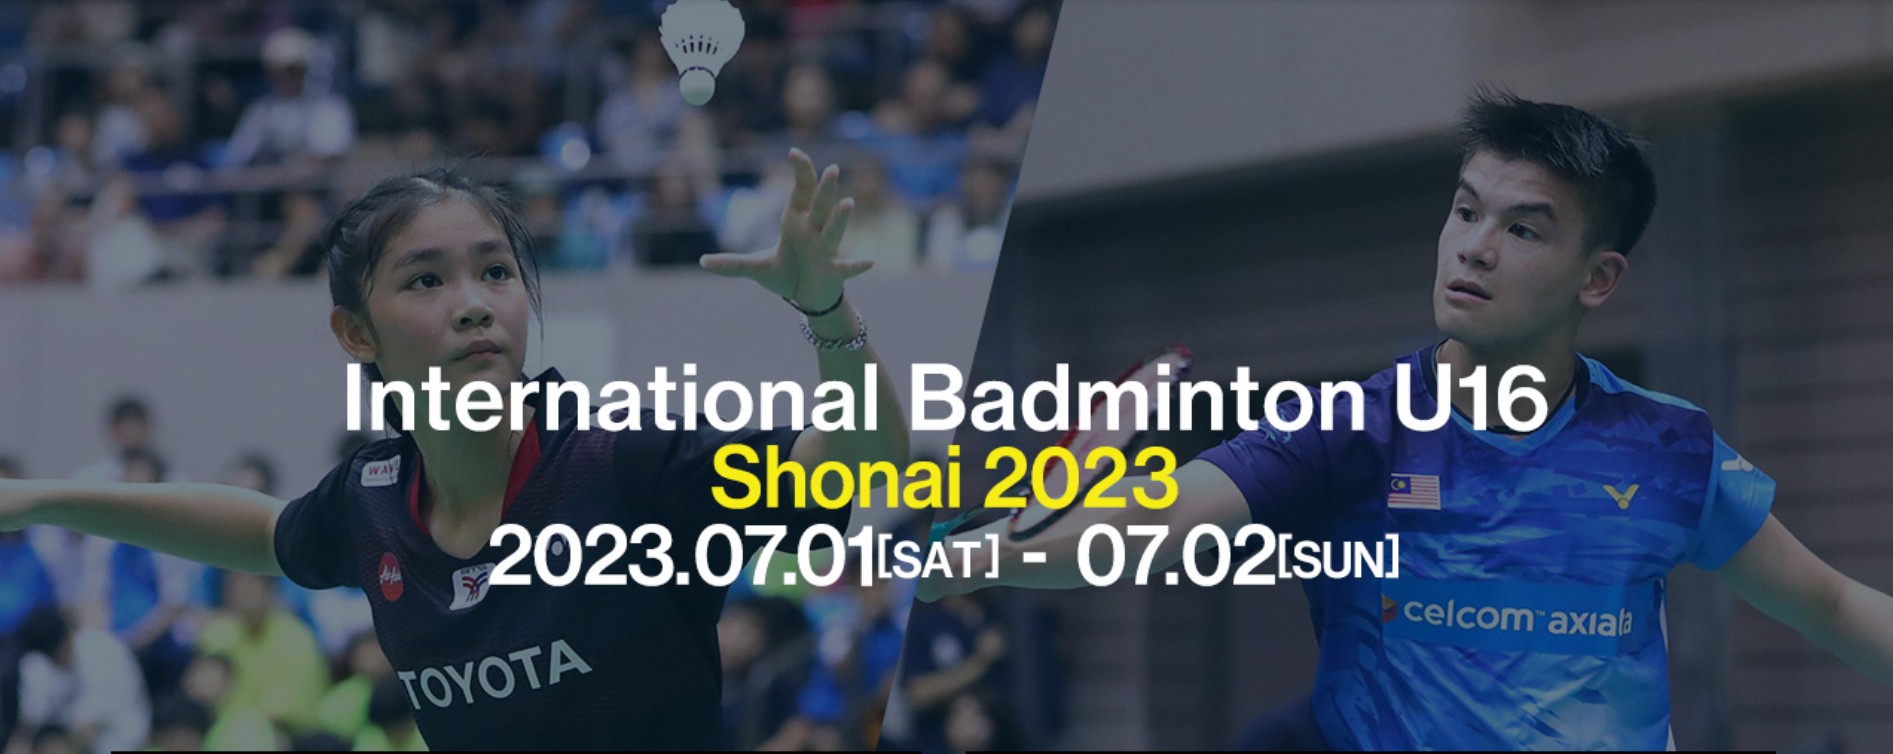 ประกาศคัดเลือกนักกีฬาเข้าร่วมการแข่งขัน International Badminton U16 SHONAI Invitational 2023